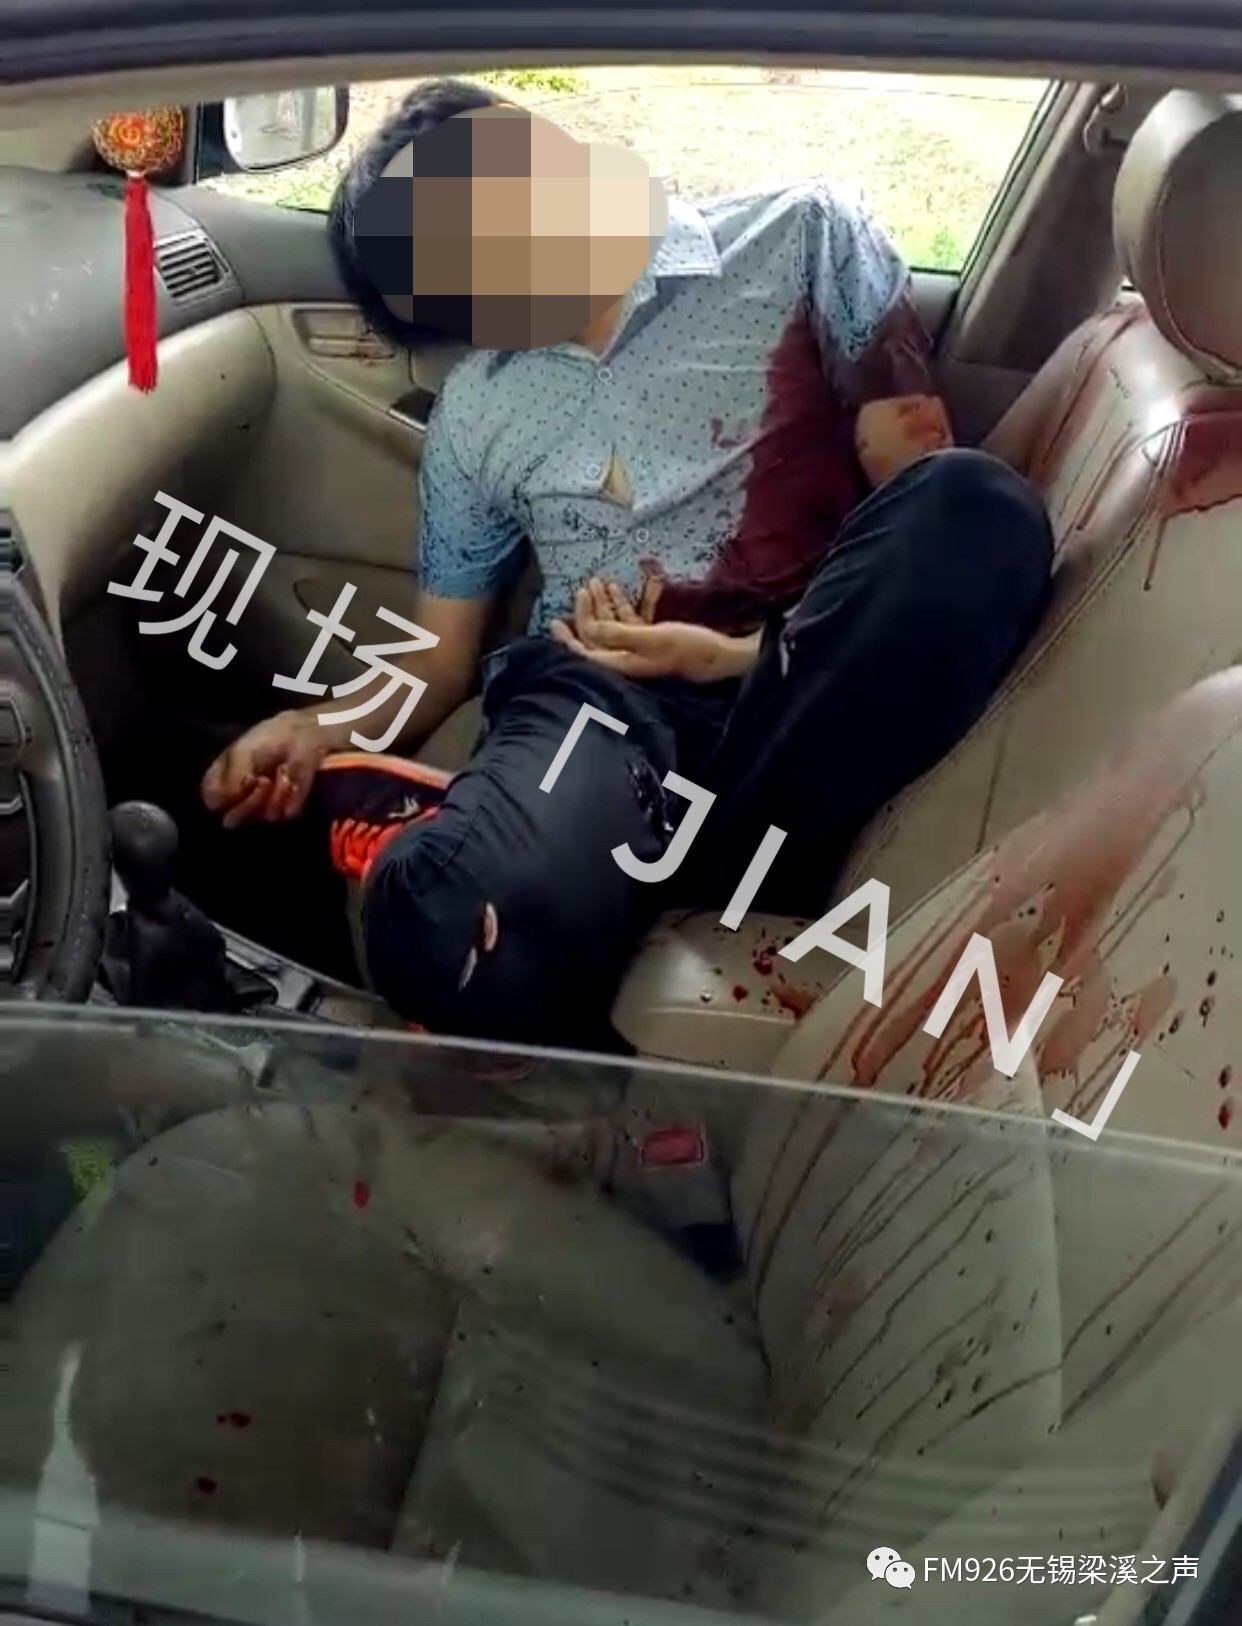 权威发布:今天上午,宜兴一男子在轿车内被害身亡!